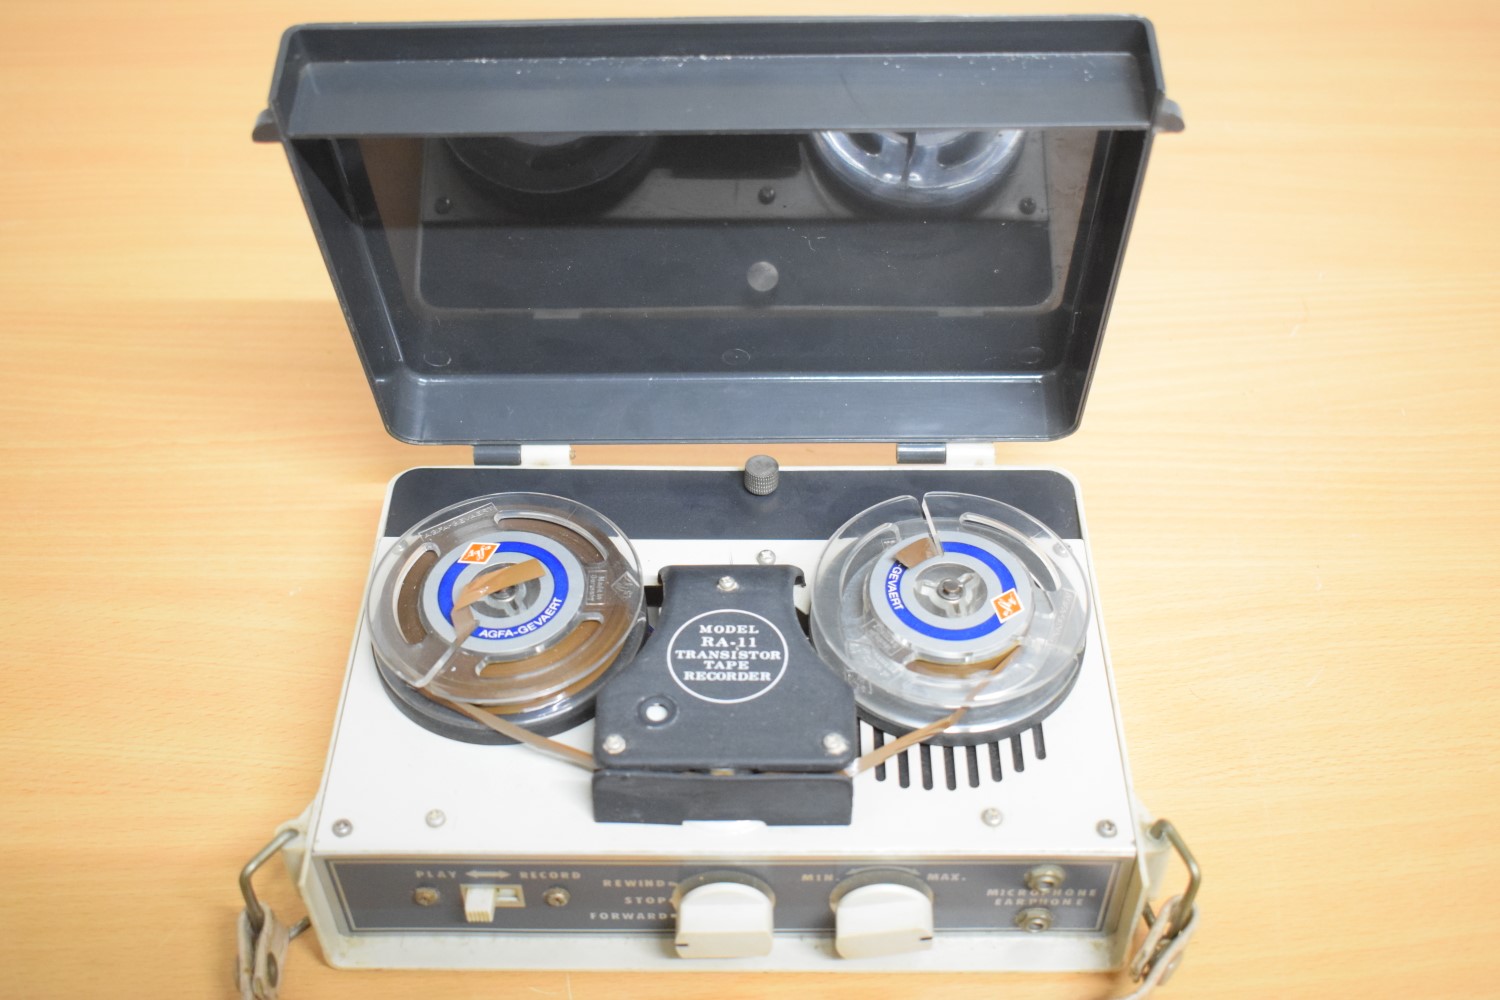 Apolec RA-11 Portable Tape Recorder